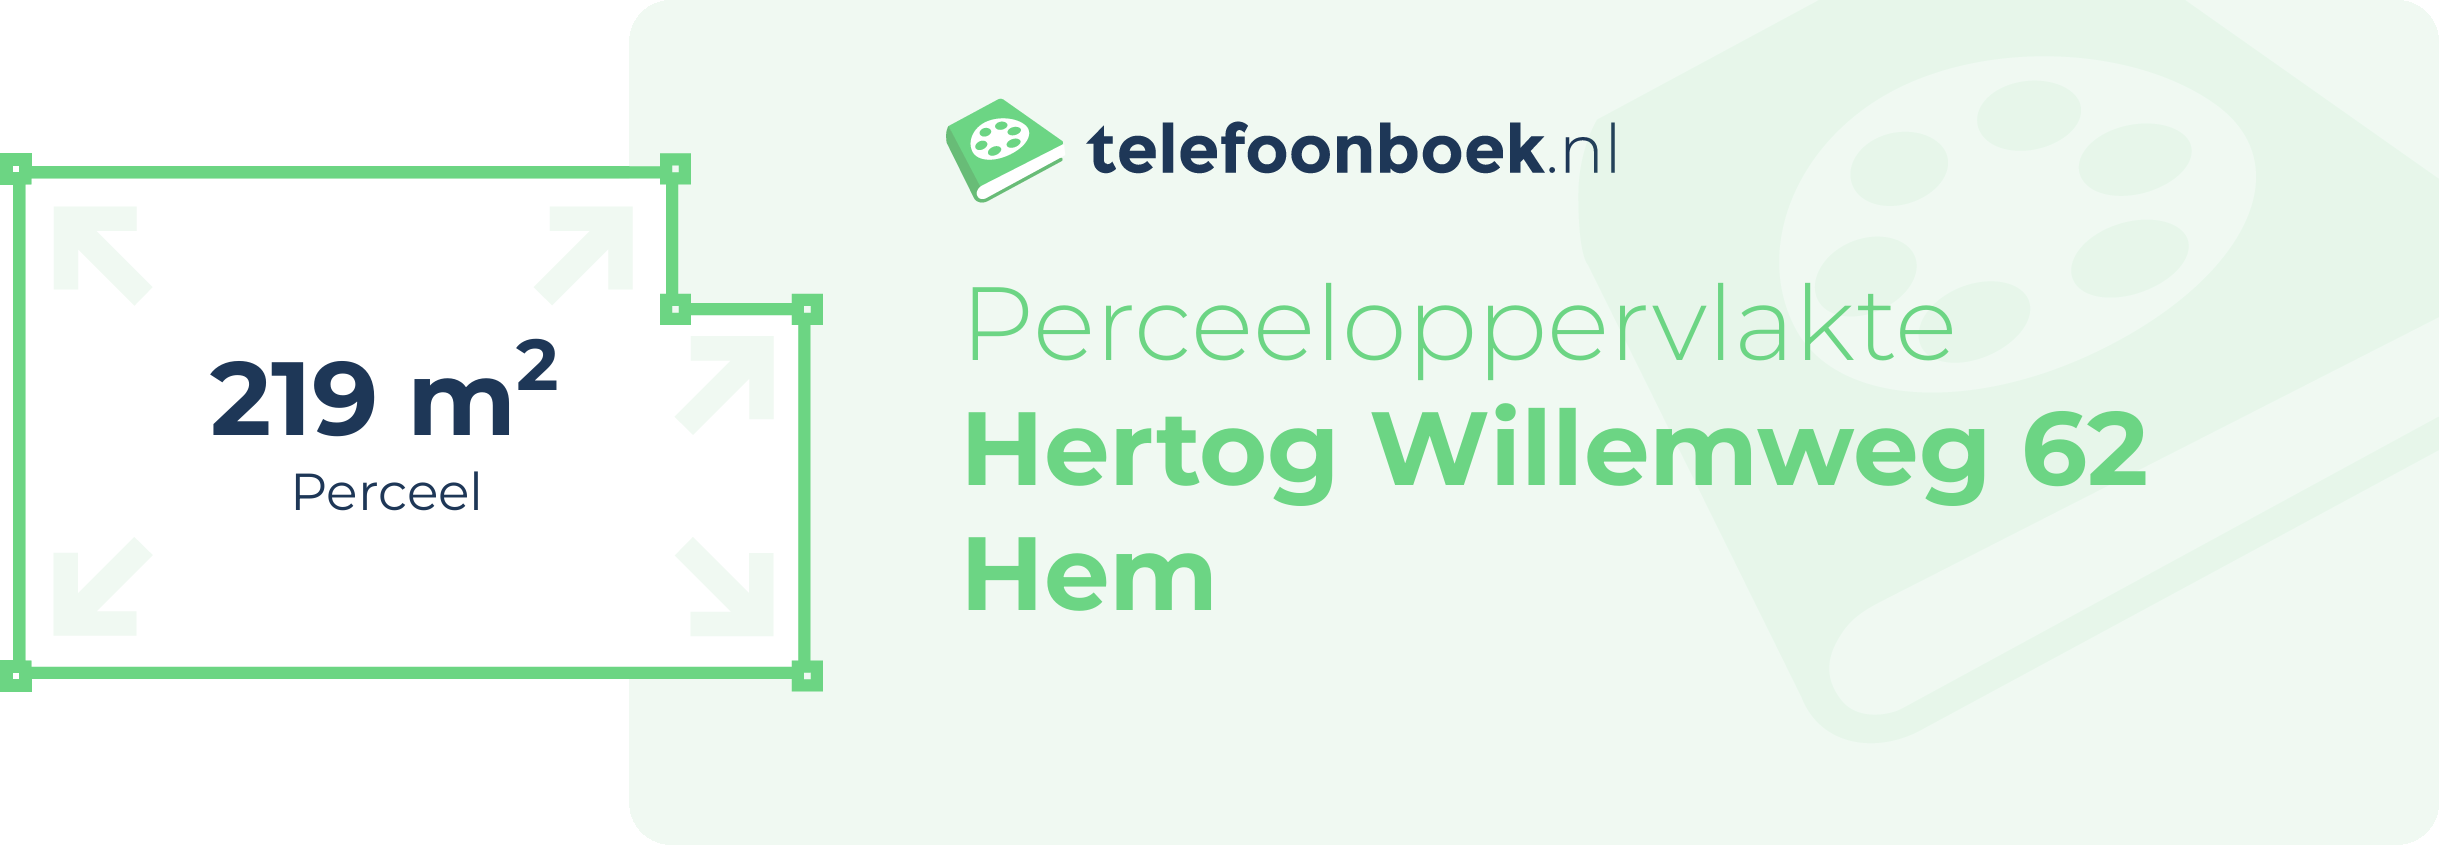 Perceeloppervlakte Hertog Willemweg 62 Hem